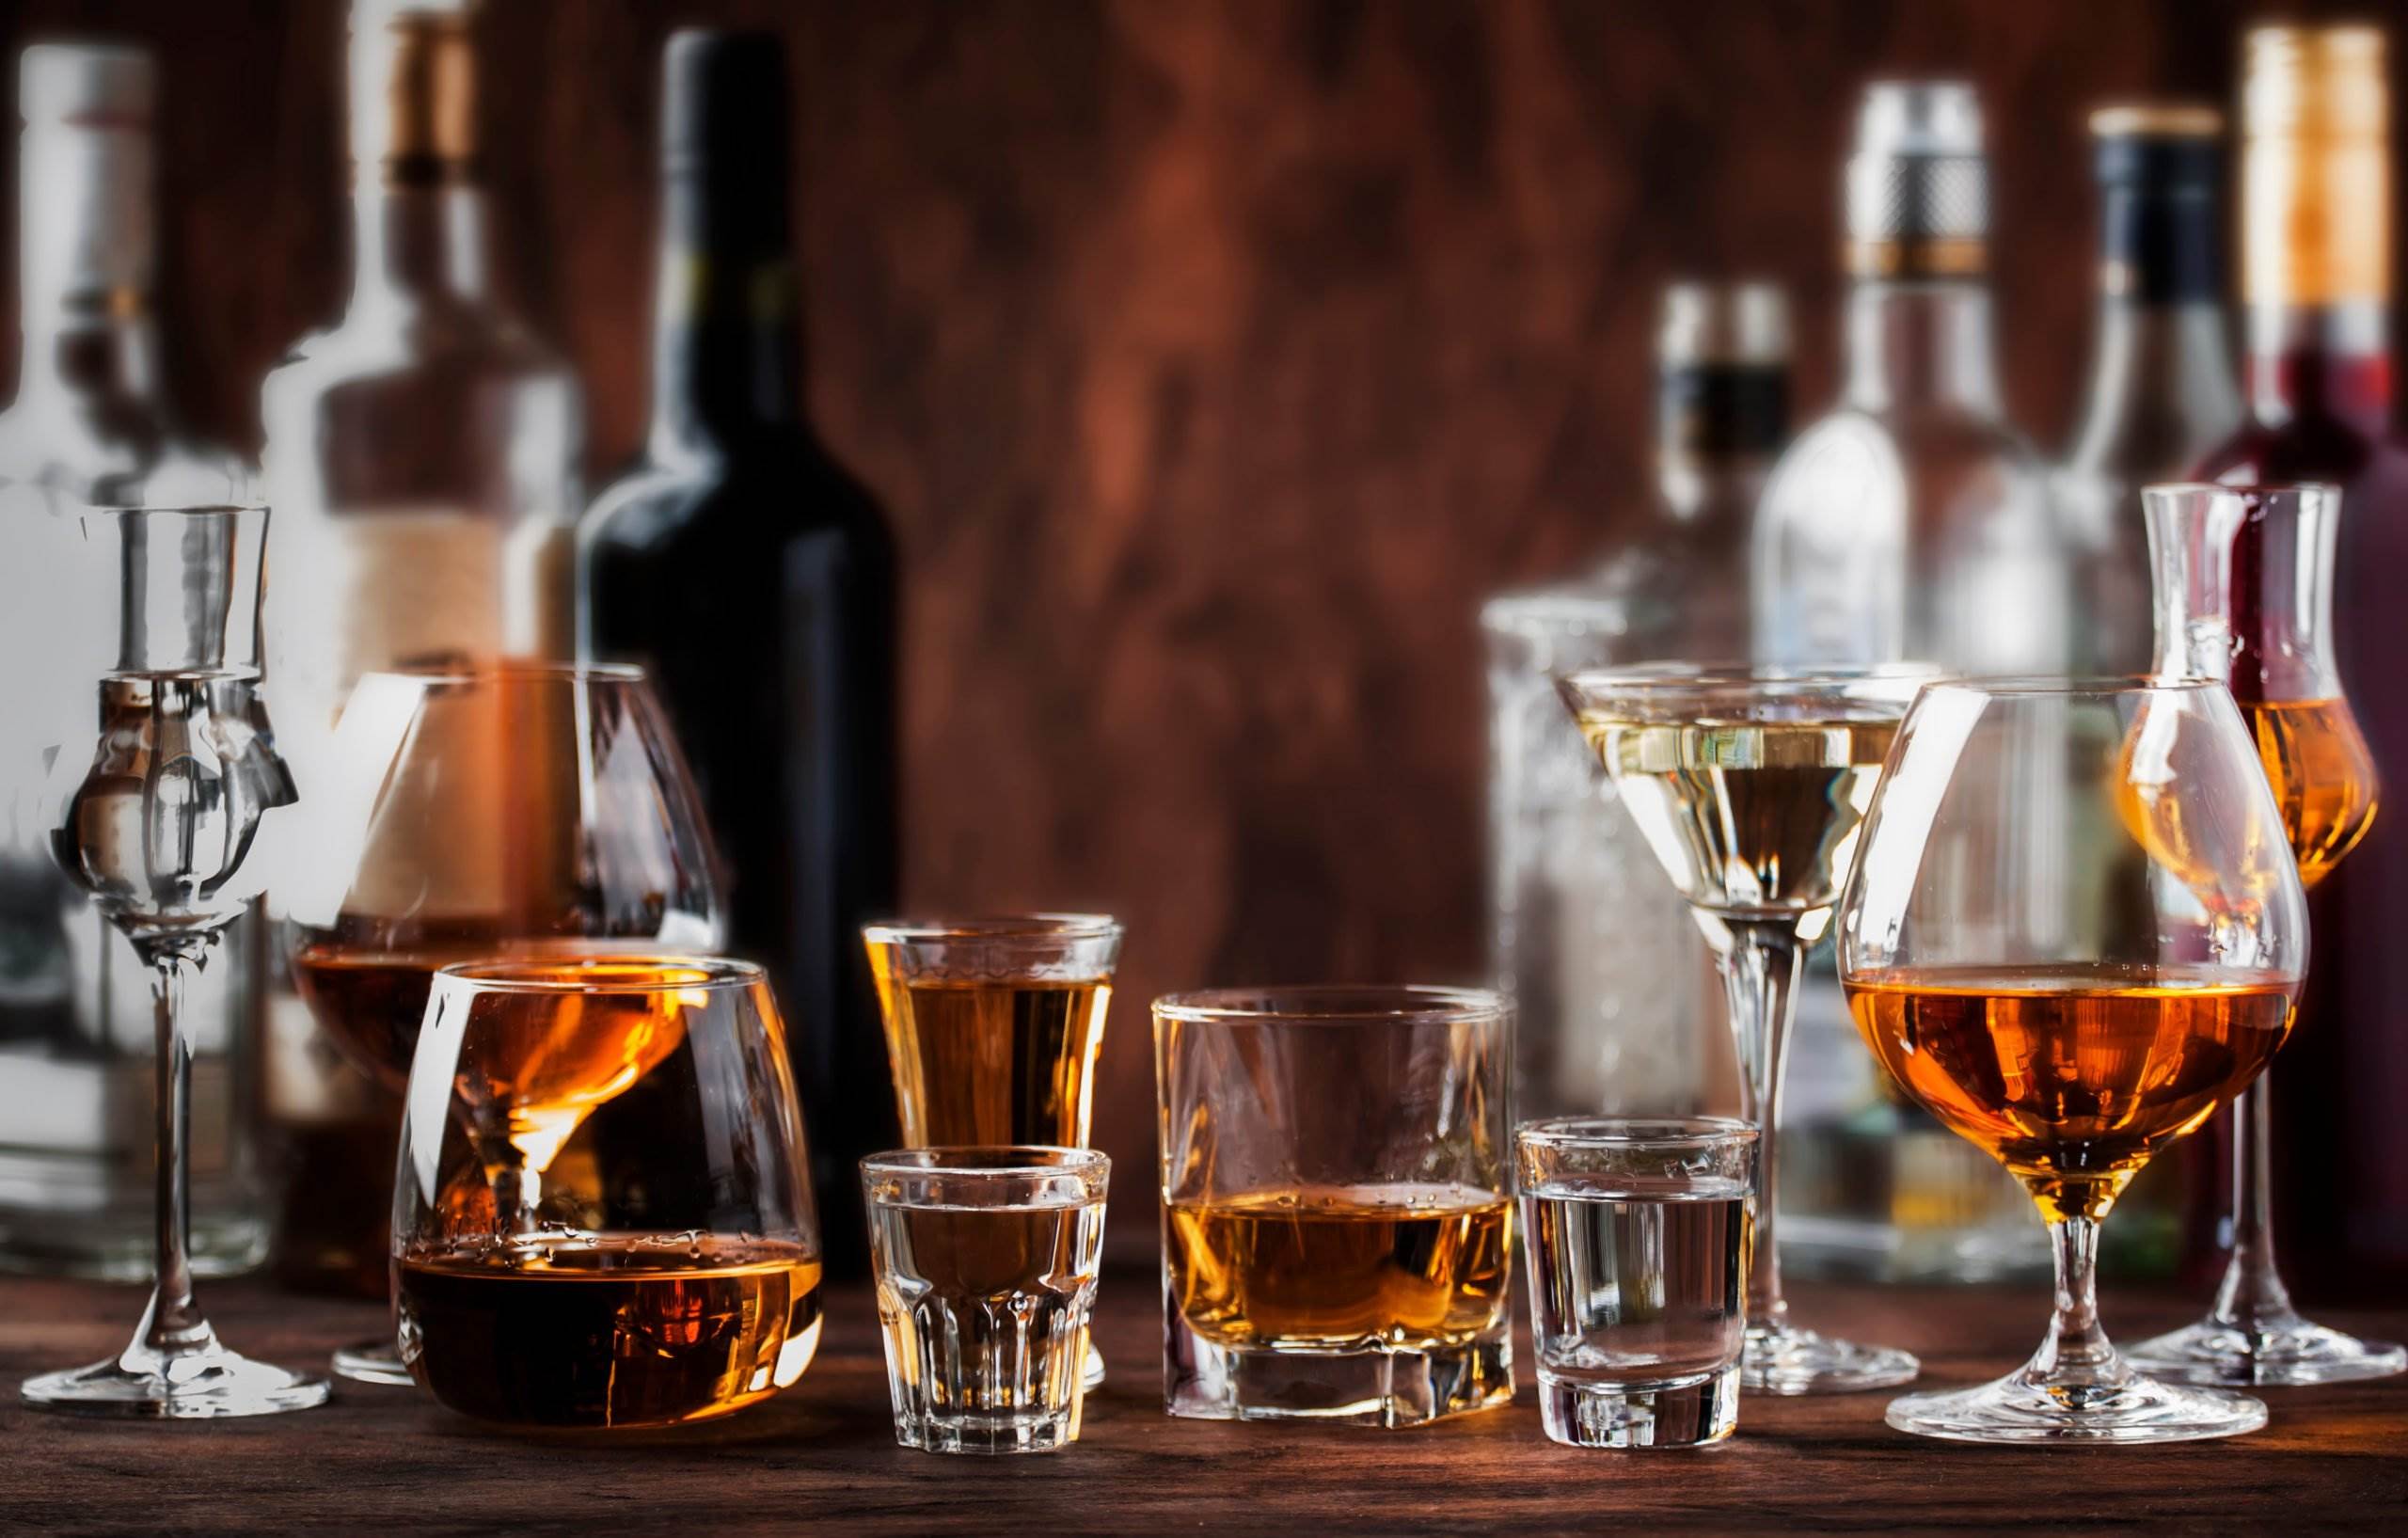 Array of liquor on bar